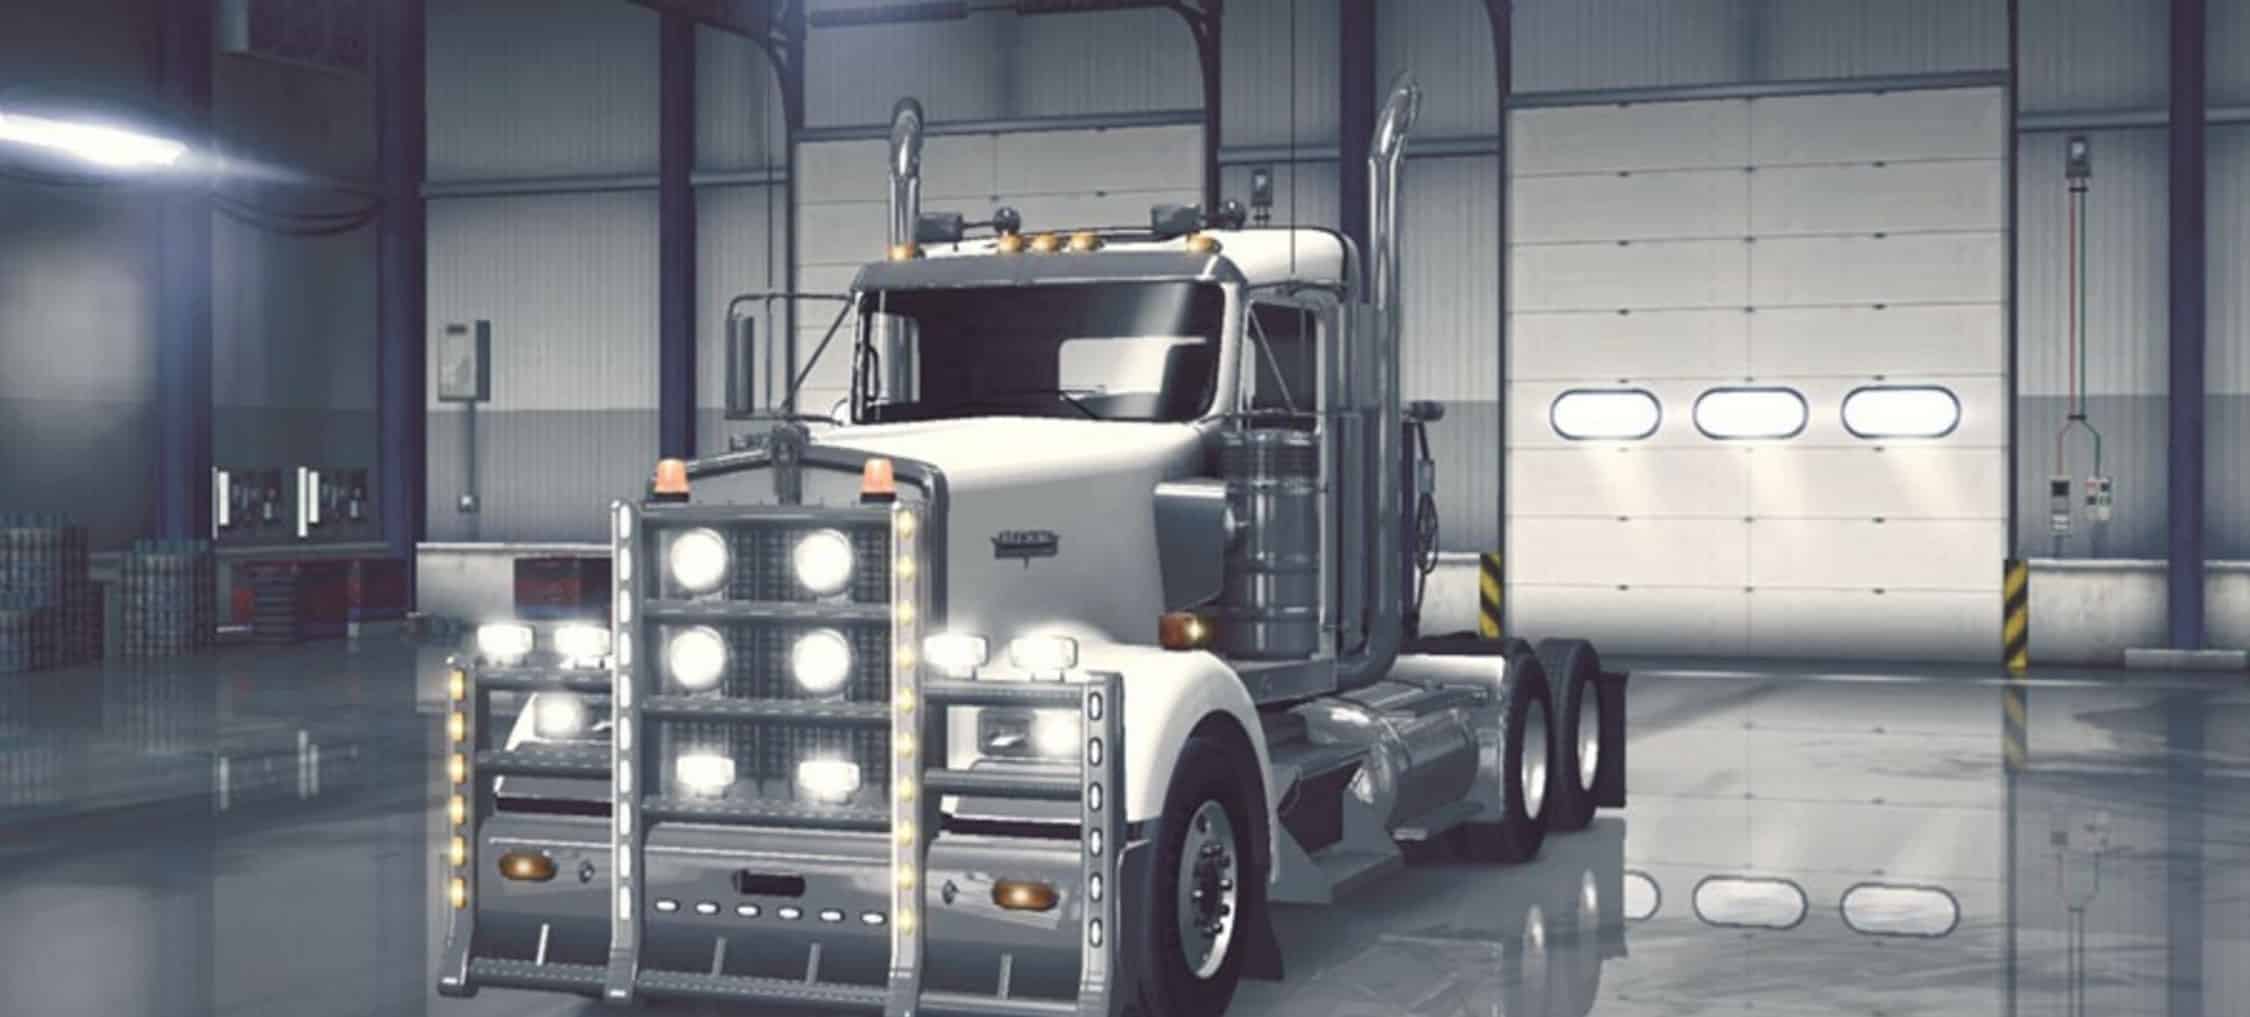 Truck Accessories v 1.1 Mod  American Truck Simulator mod 